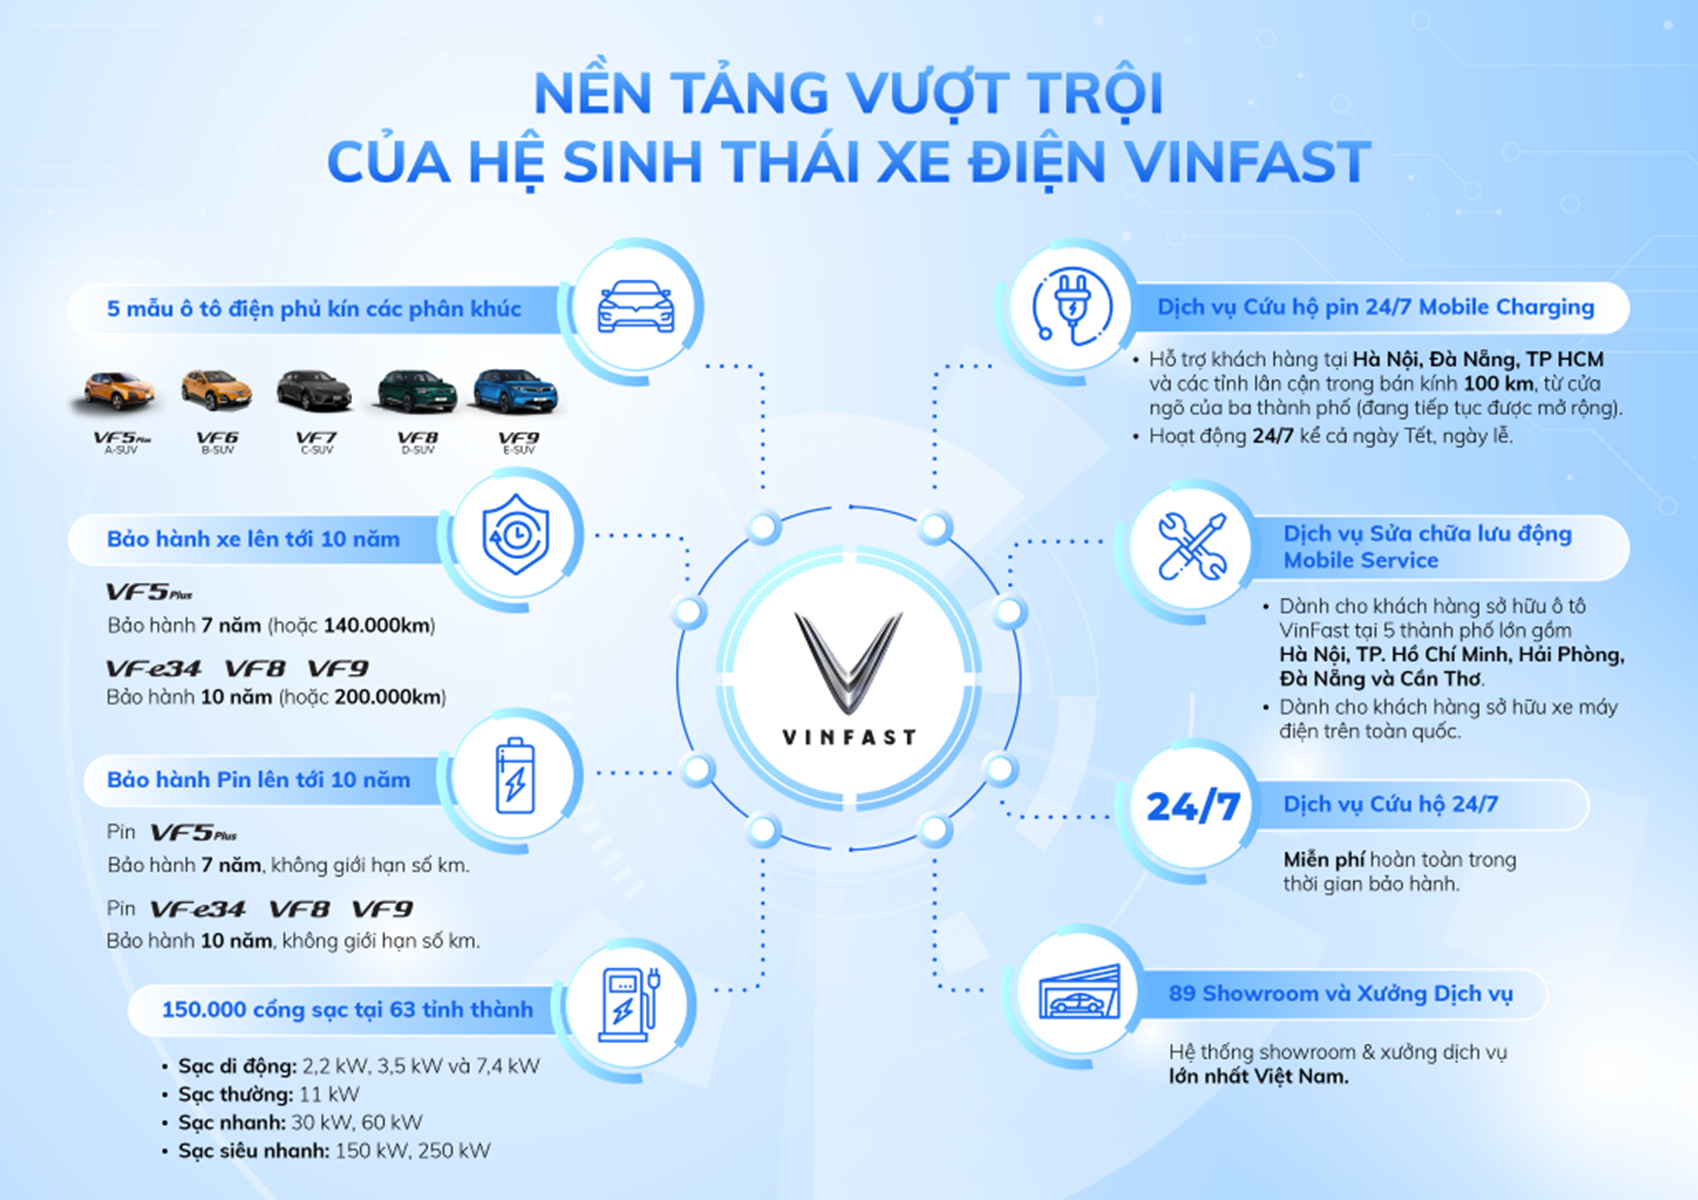 Đầu tư vào hạ tầng trạm sạc là một phần quan trọng trong chiến lược phổ cập xe điện của VinFast tại Việt Nam.